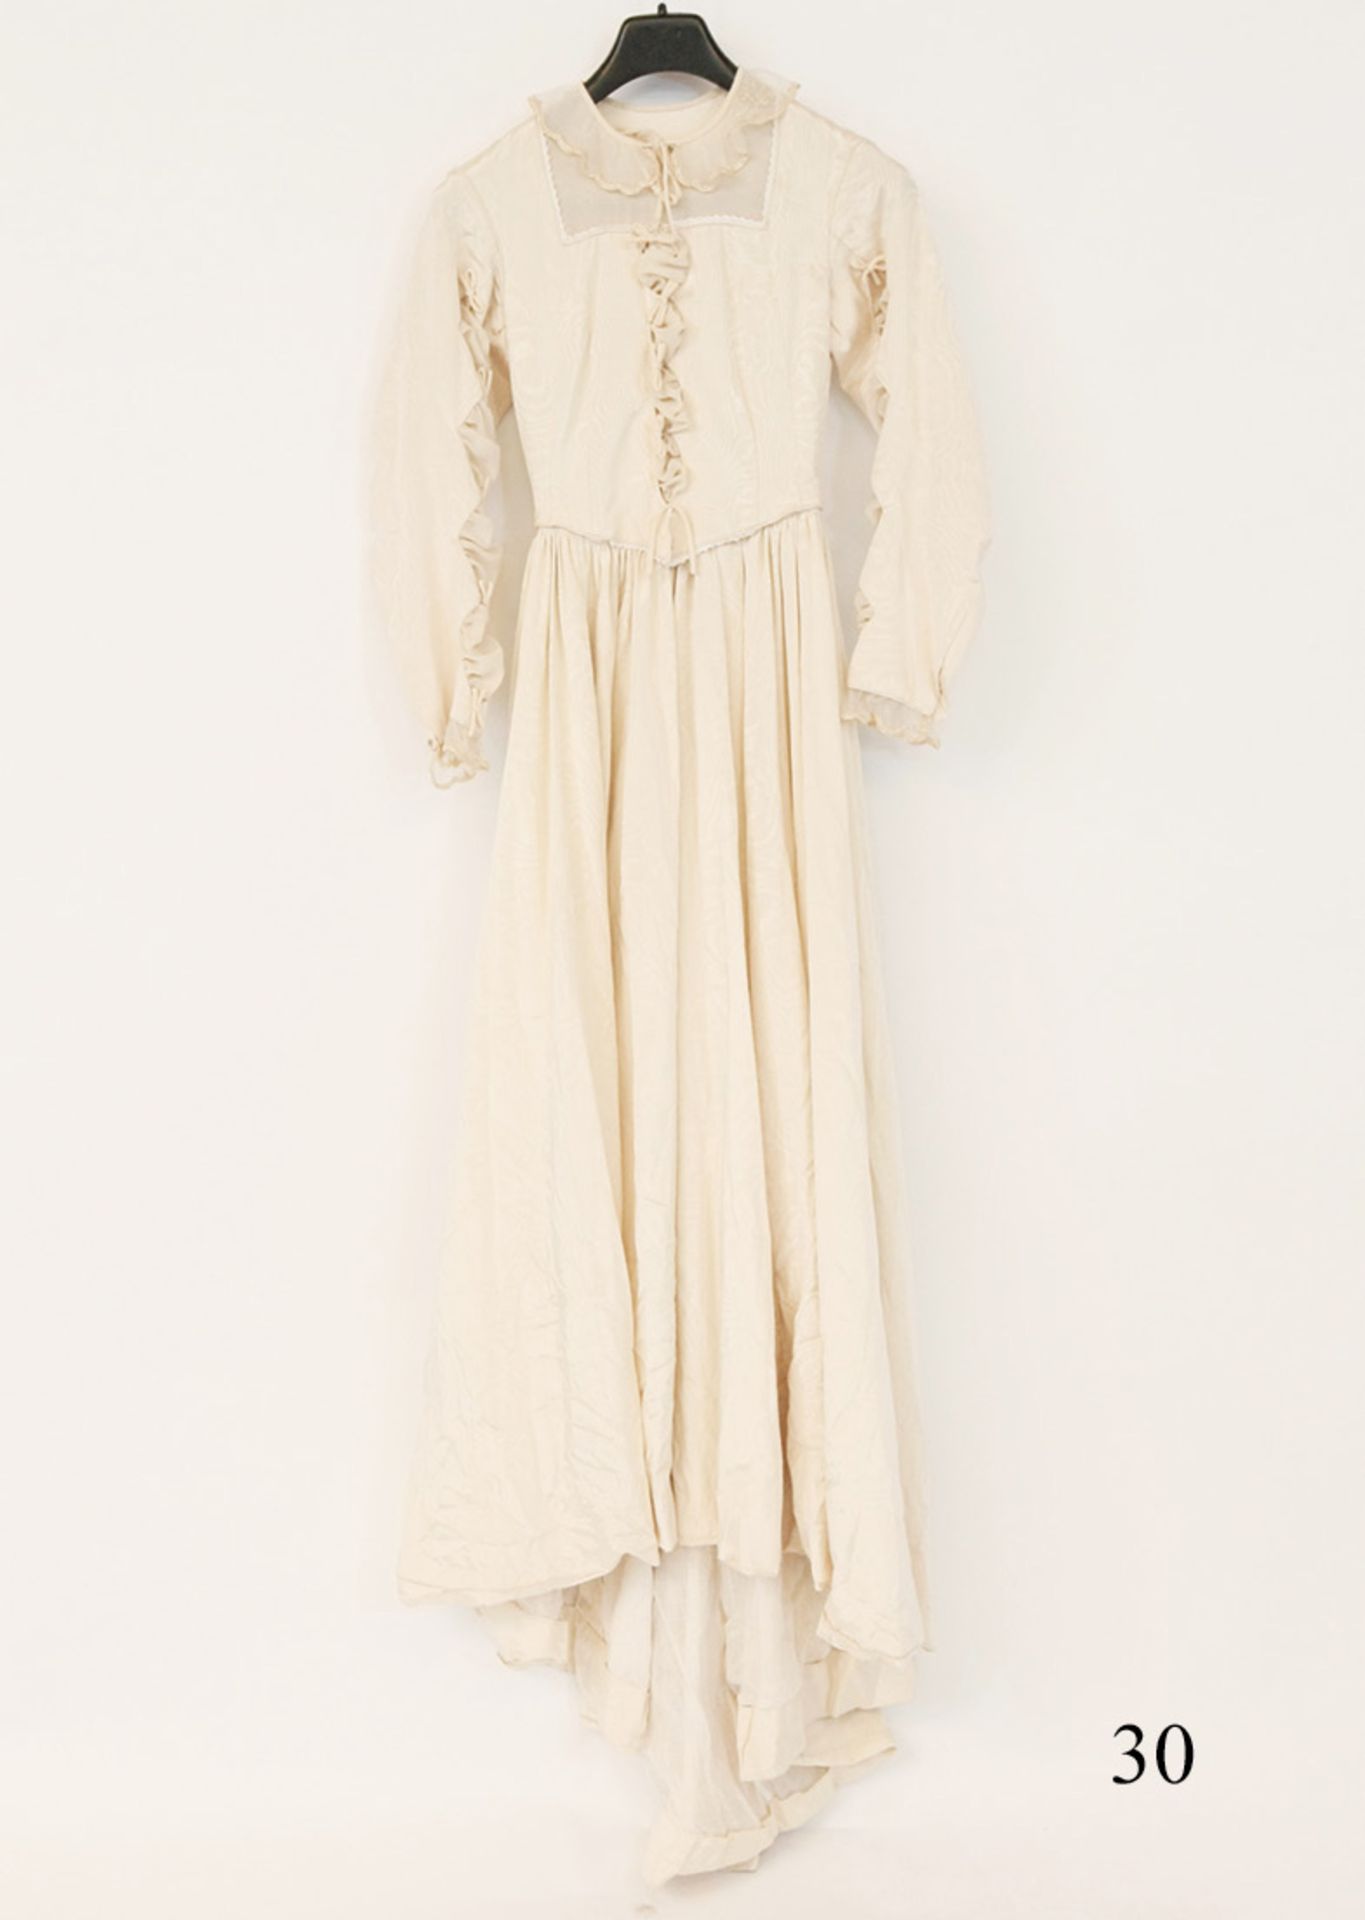 Prachtvolles Damenkleid um 1820Cermefarbene Seide. Zierapplikationen. Tragbar, nicht rissig. Gr